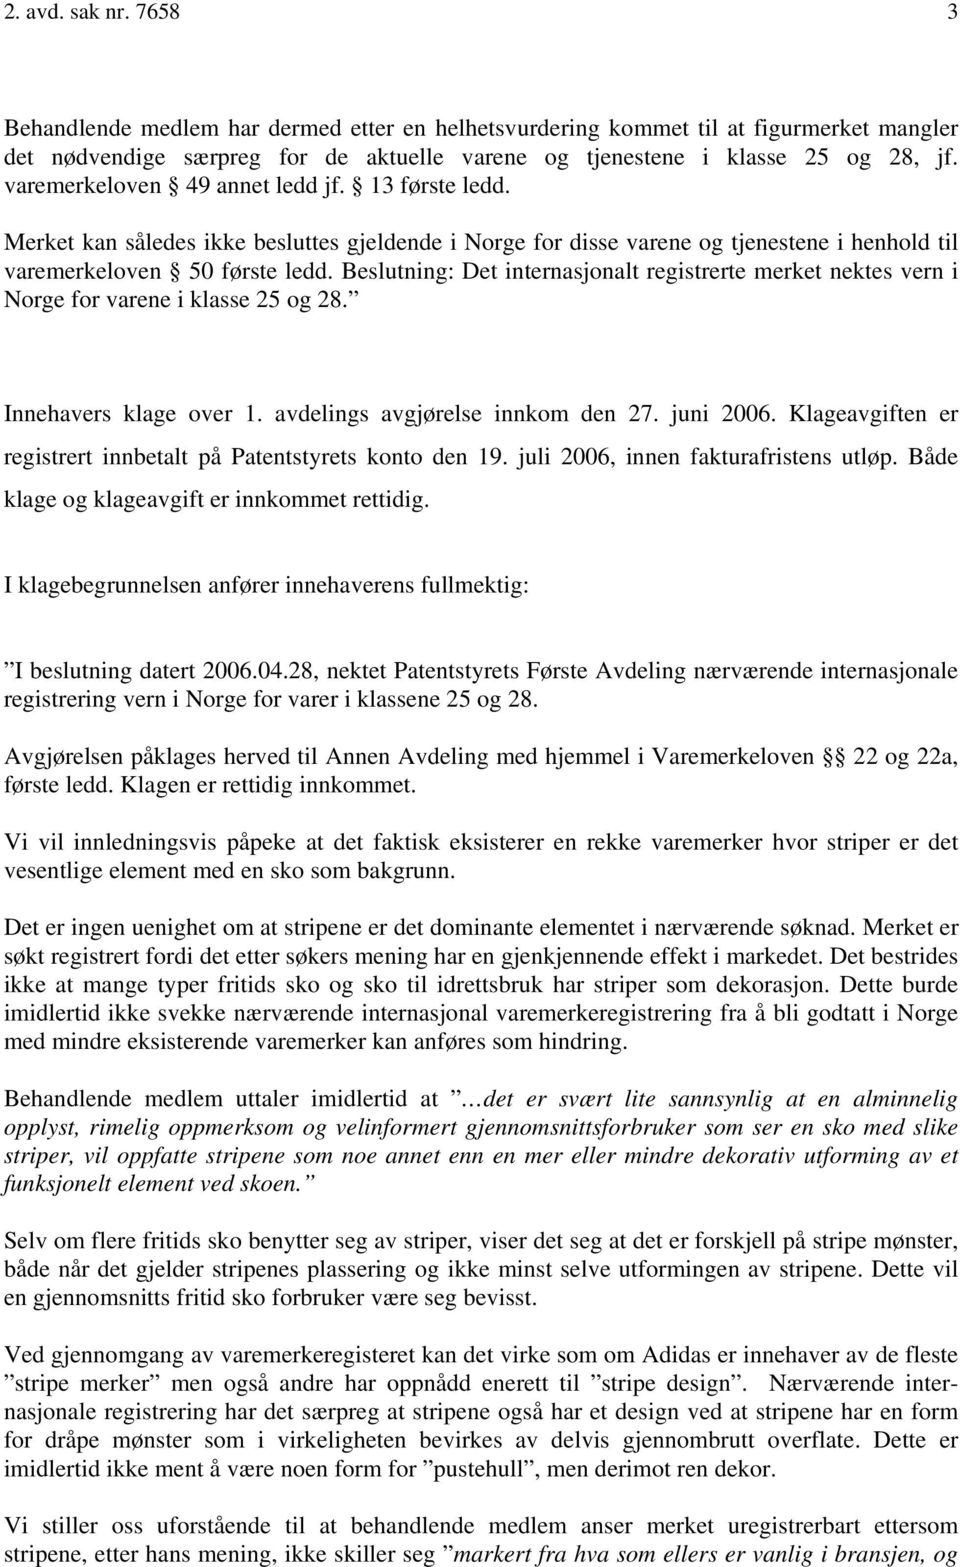 Beslutning: Det internasjonalt registrerte merket nektes vern i Norge for varene i klasse 25 og 28. Innehavers klage over 1. avdelings avgjørelse innkom den 27. juni 2006.